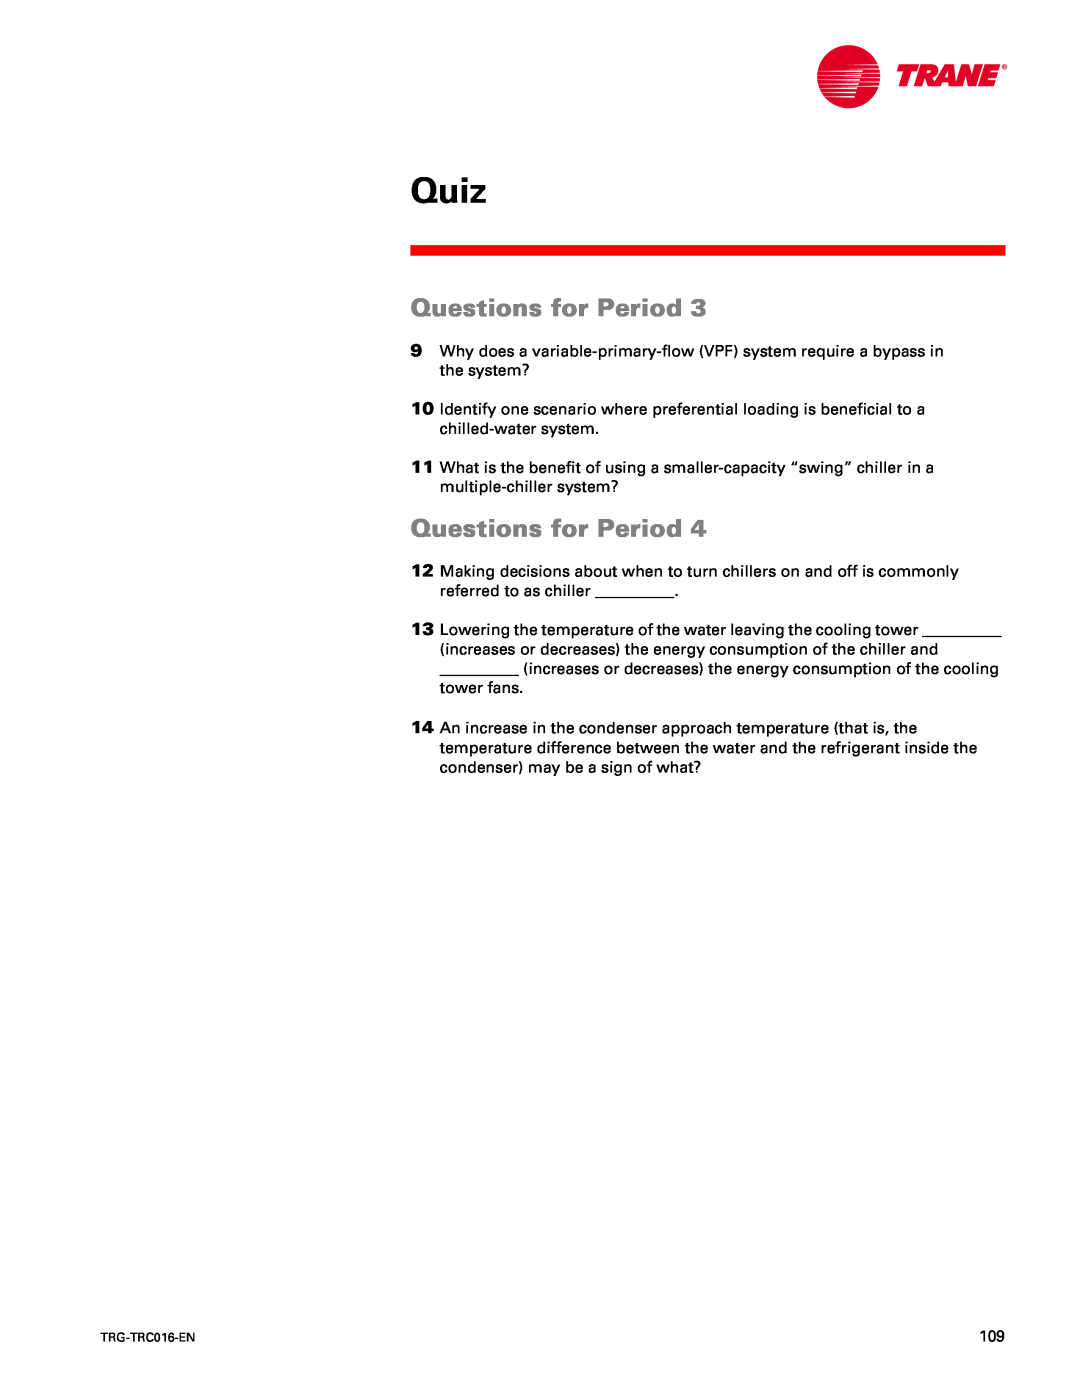 Trane TRG-TRC016-EN manual Quiz, Questions for Period 